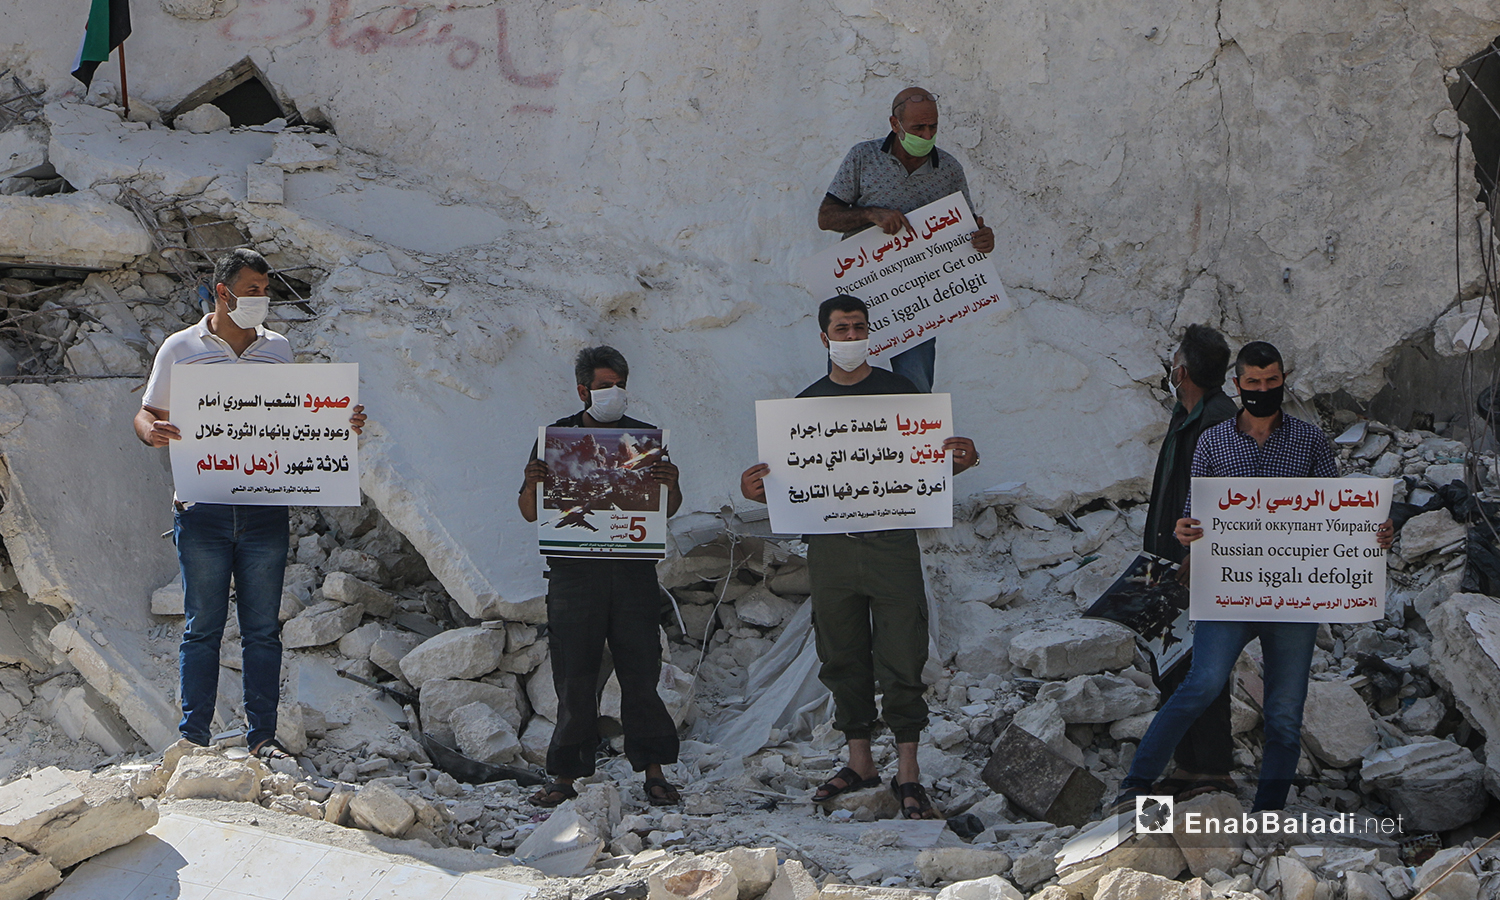 ناشطون في إدلب يحملون لافتات تستنكر الانتهاكات الروسية في سوريا خلال خمس أعوام من التدخل العسكري - 30 أيلول 2020 (عنب بلدي/أنس الخولي)